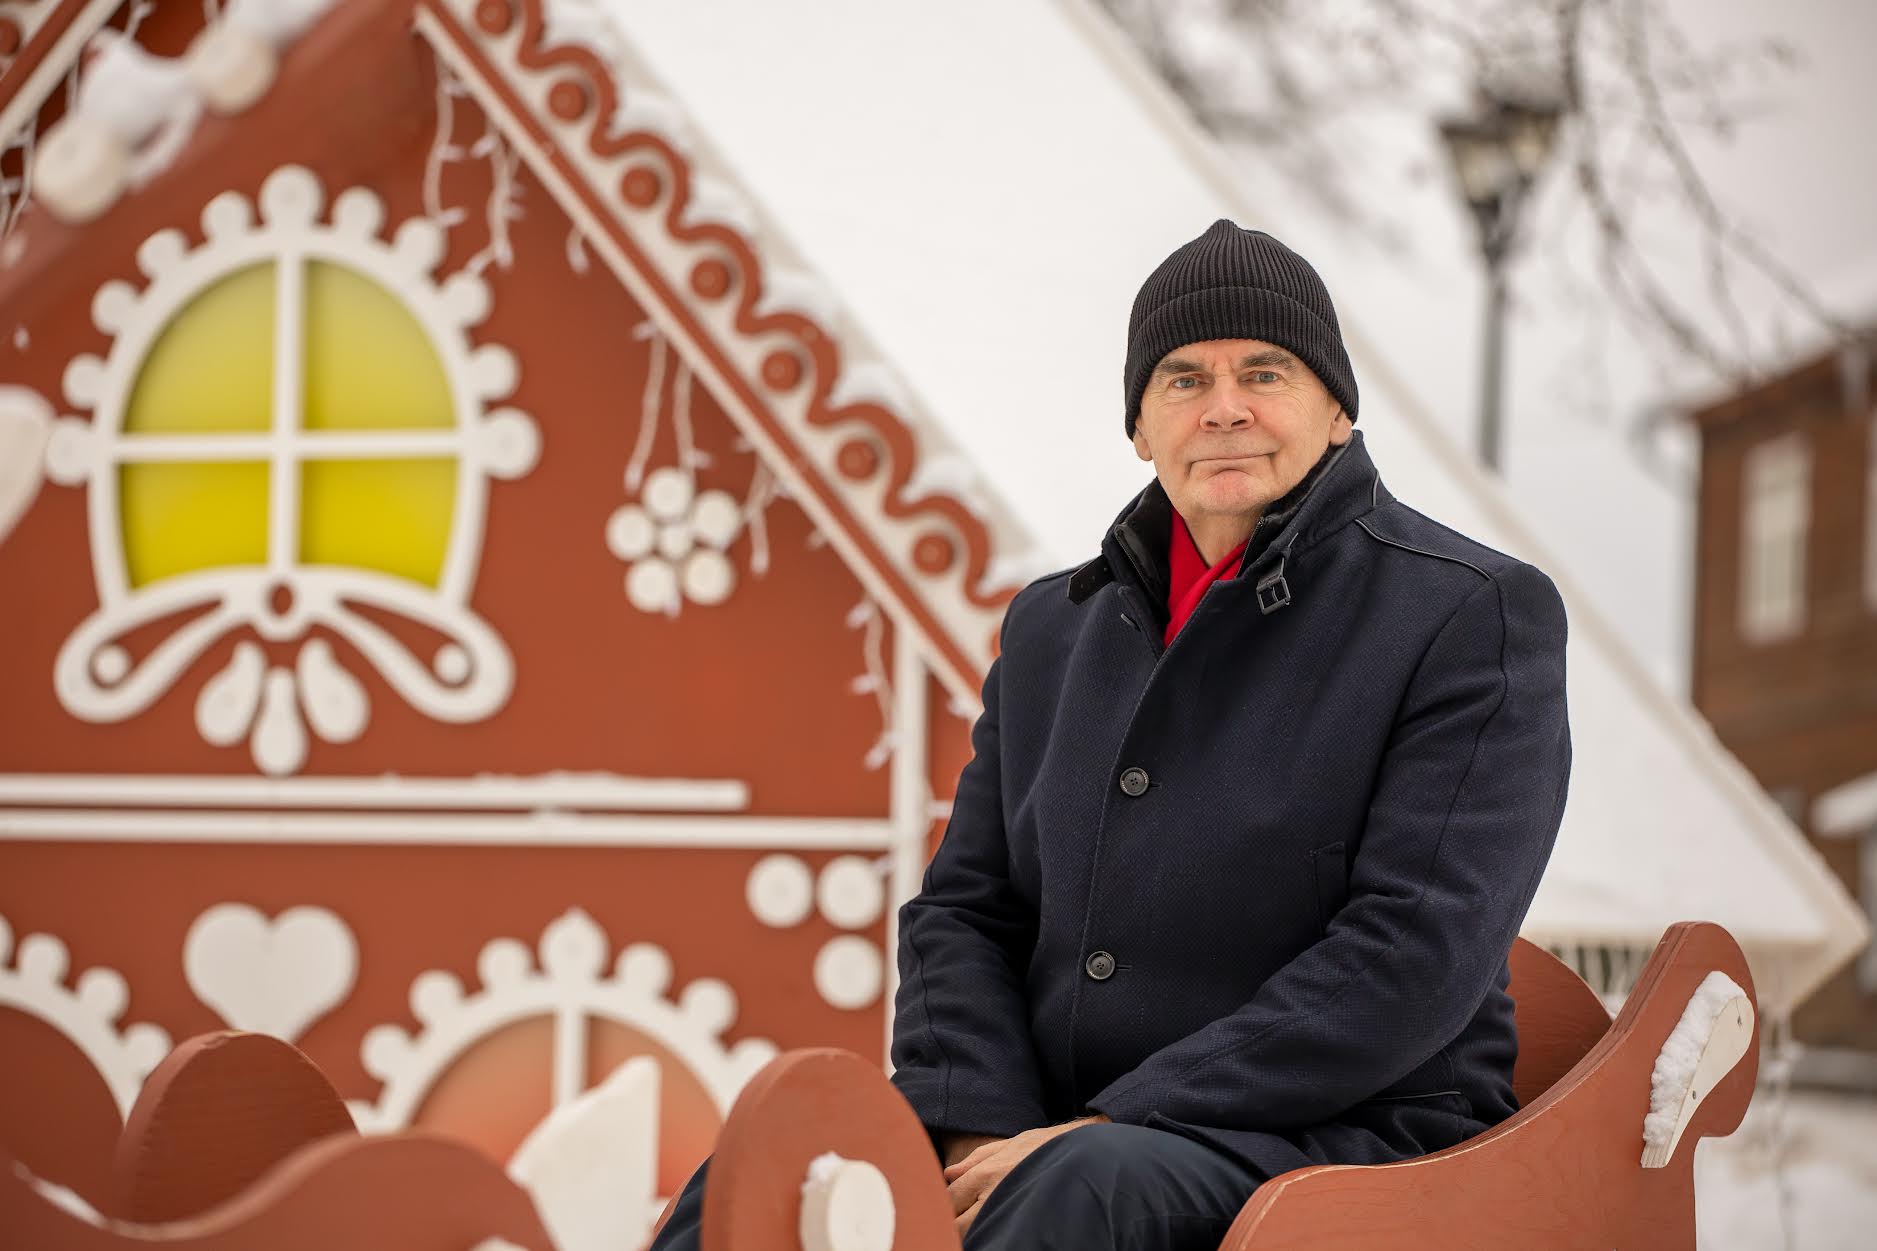 Lõuna-Eesti haigla juhataja Arvi Vask avaldab  lootust, et aprilliks on  Meegomäel ligi 200 000  eurot maksev päikesepargiprojekt valmis.  Foto: AIGAR NAGEL